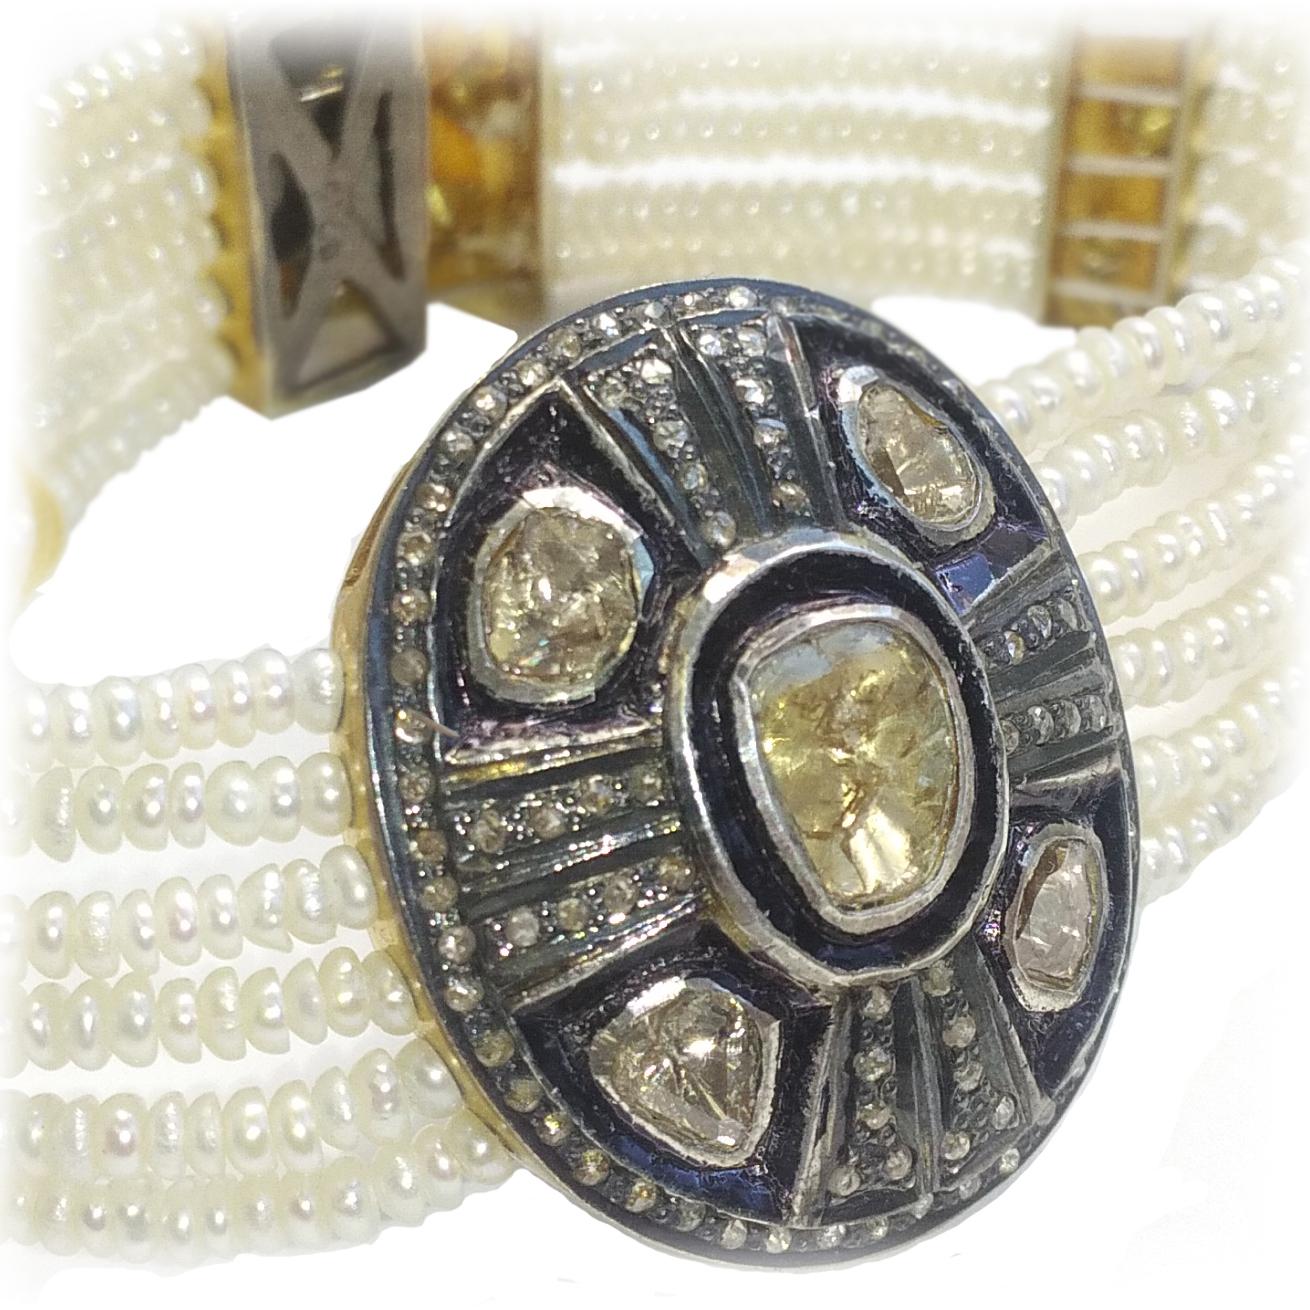 Diamond ‘Rose Cut’ and Freshwater Pearls Bracelet für Damen oder Herren